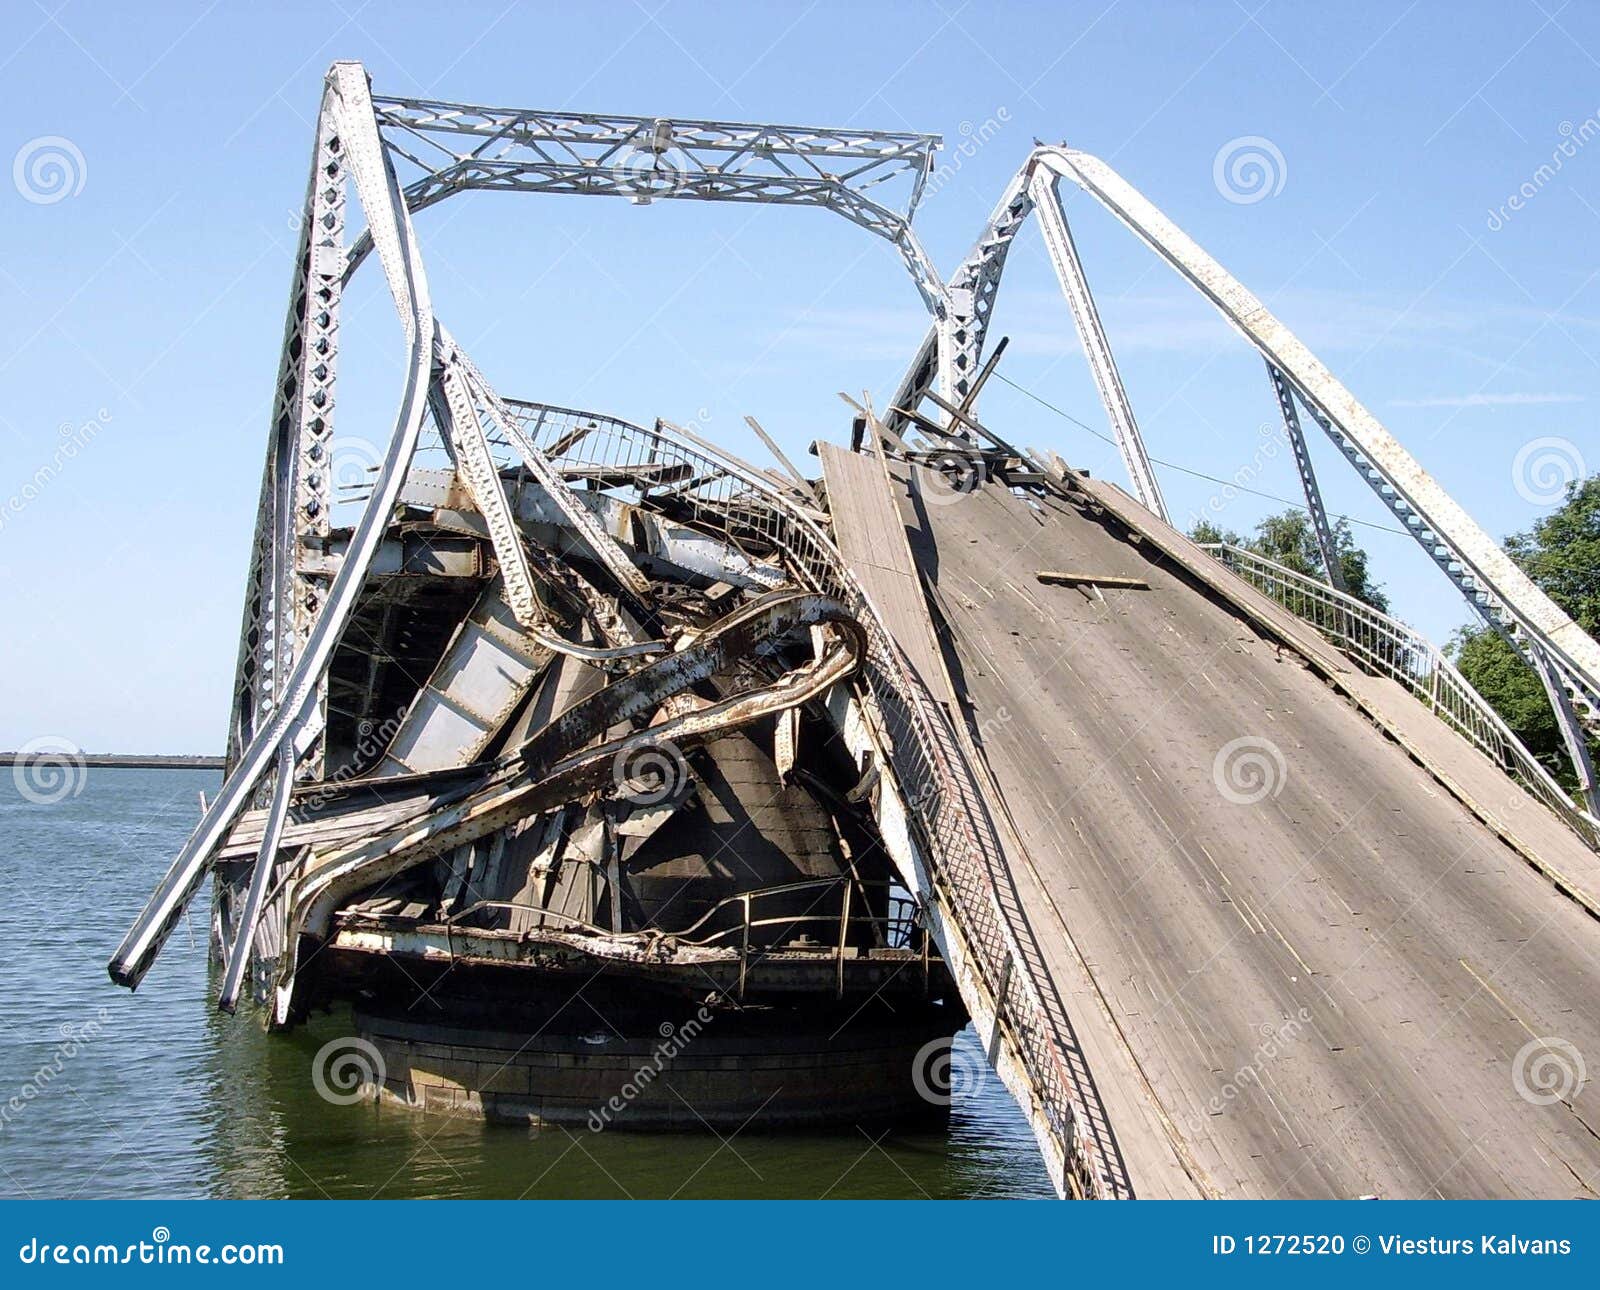 Разрушь мост 2. Мост в Затоке. Разрушение мостов для презентации. Разрушенные мостки. Разрушение моста деревянного.